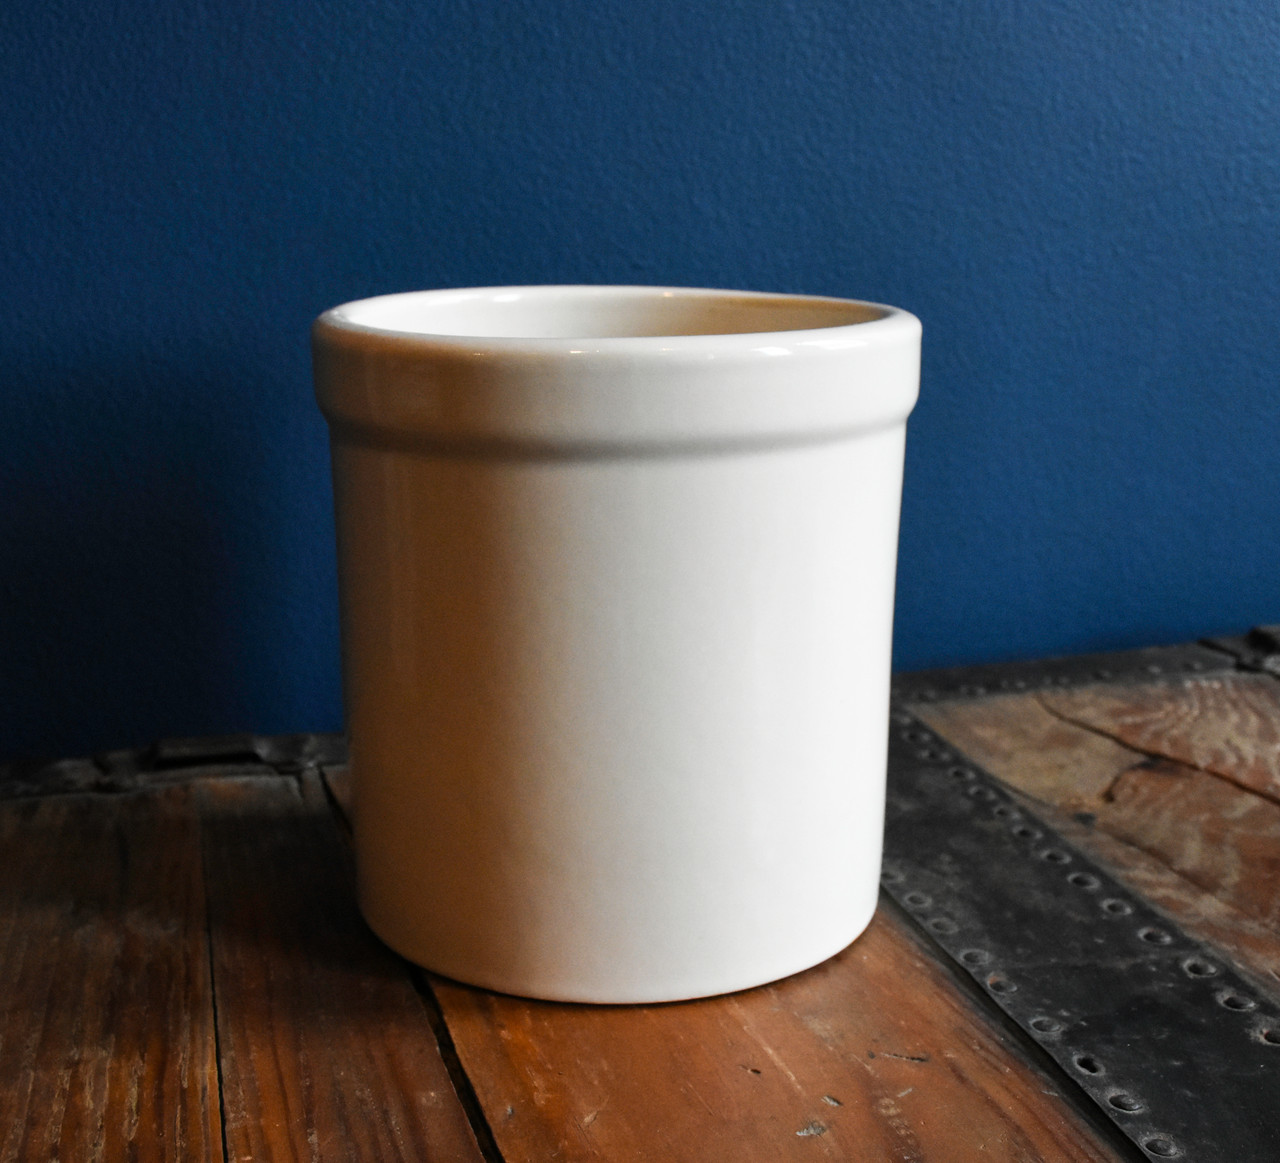 Crock pot 2 quart BRAND NEW - appliances - by owner - sale - craigslist